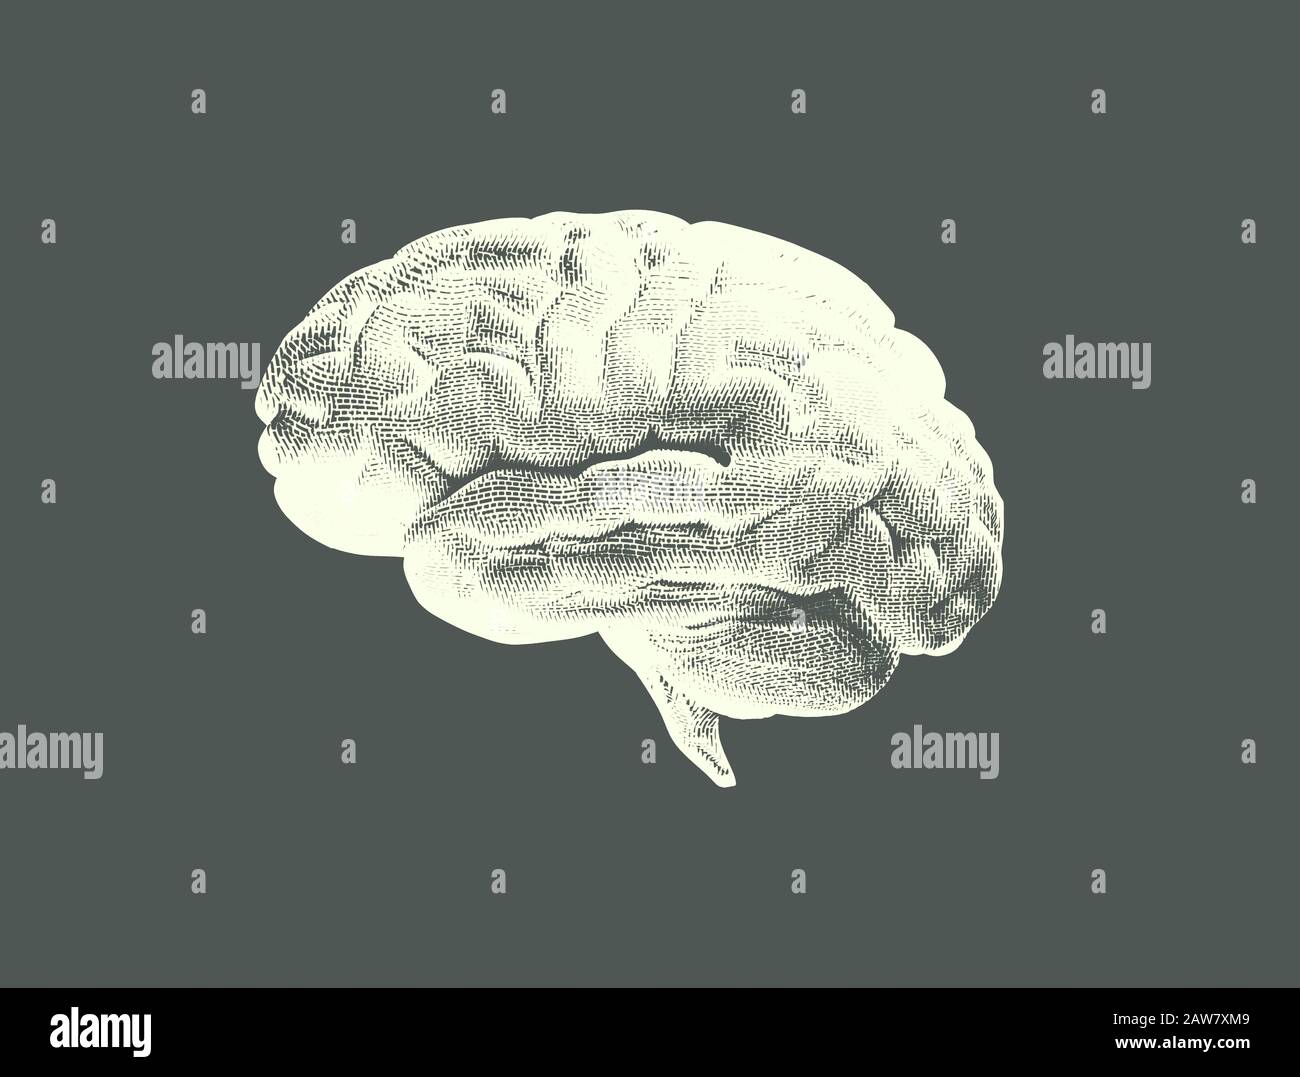 Modèle du cerveau humain style de papier vintage Banque D'Images